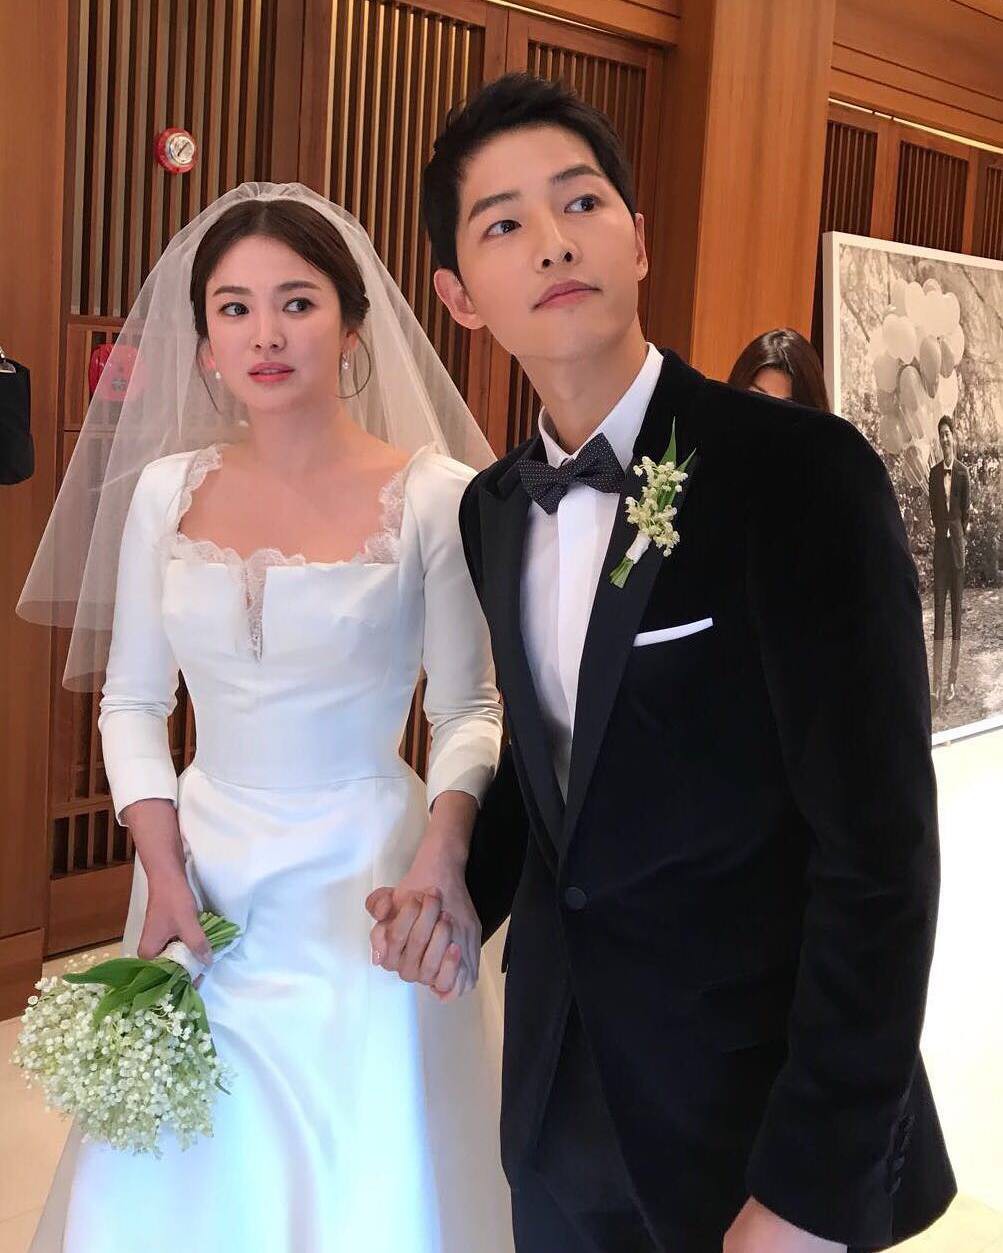 Cử chỉ của cô dâu chú rể Song Song trong bức ảnh hiếm hoi chụp trước khi bước ra lễ đường gây chú ý - Ảnh 1.